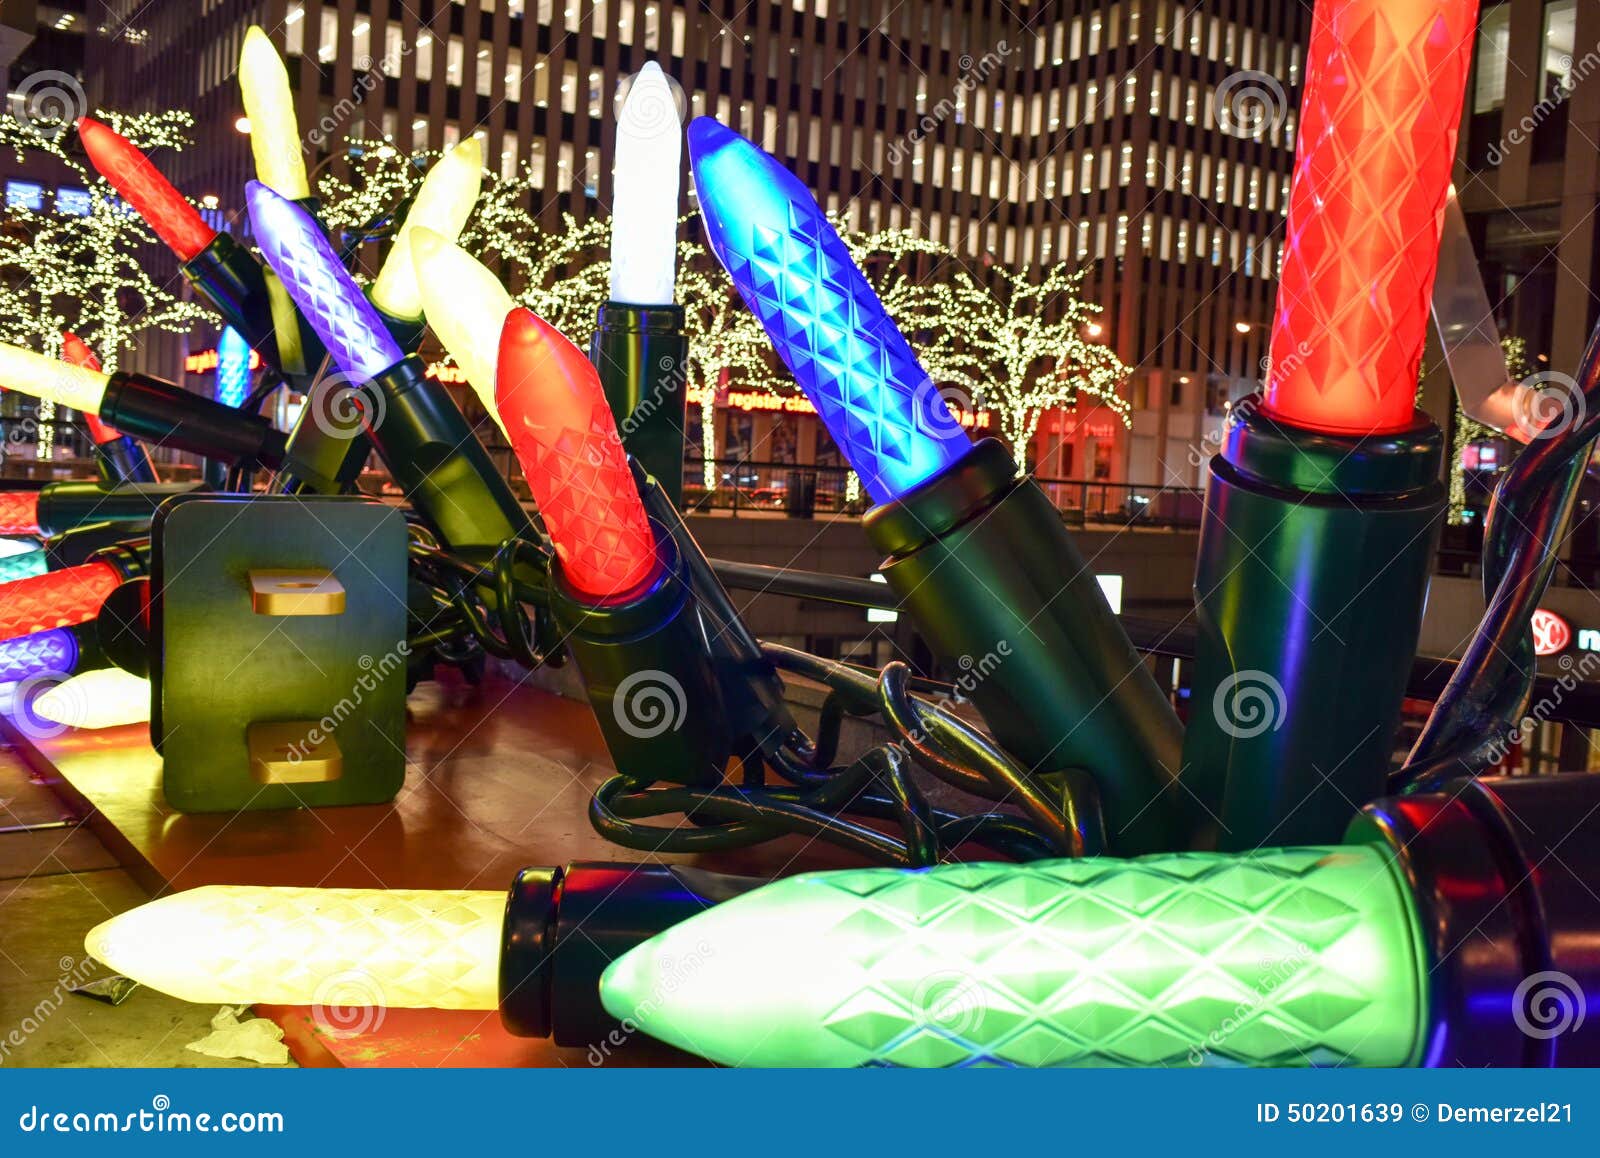 Decorazioni Natale New York.Decorazioni Di Natale New York Immagine Stock Editoriale Immagine Di Intrattenimento Metropolitano 50201639